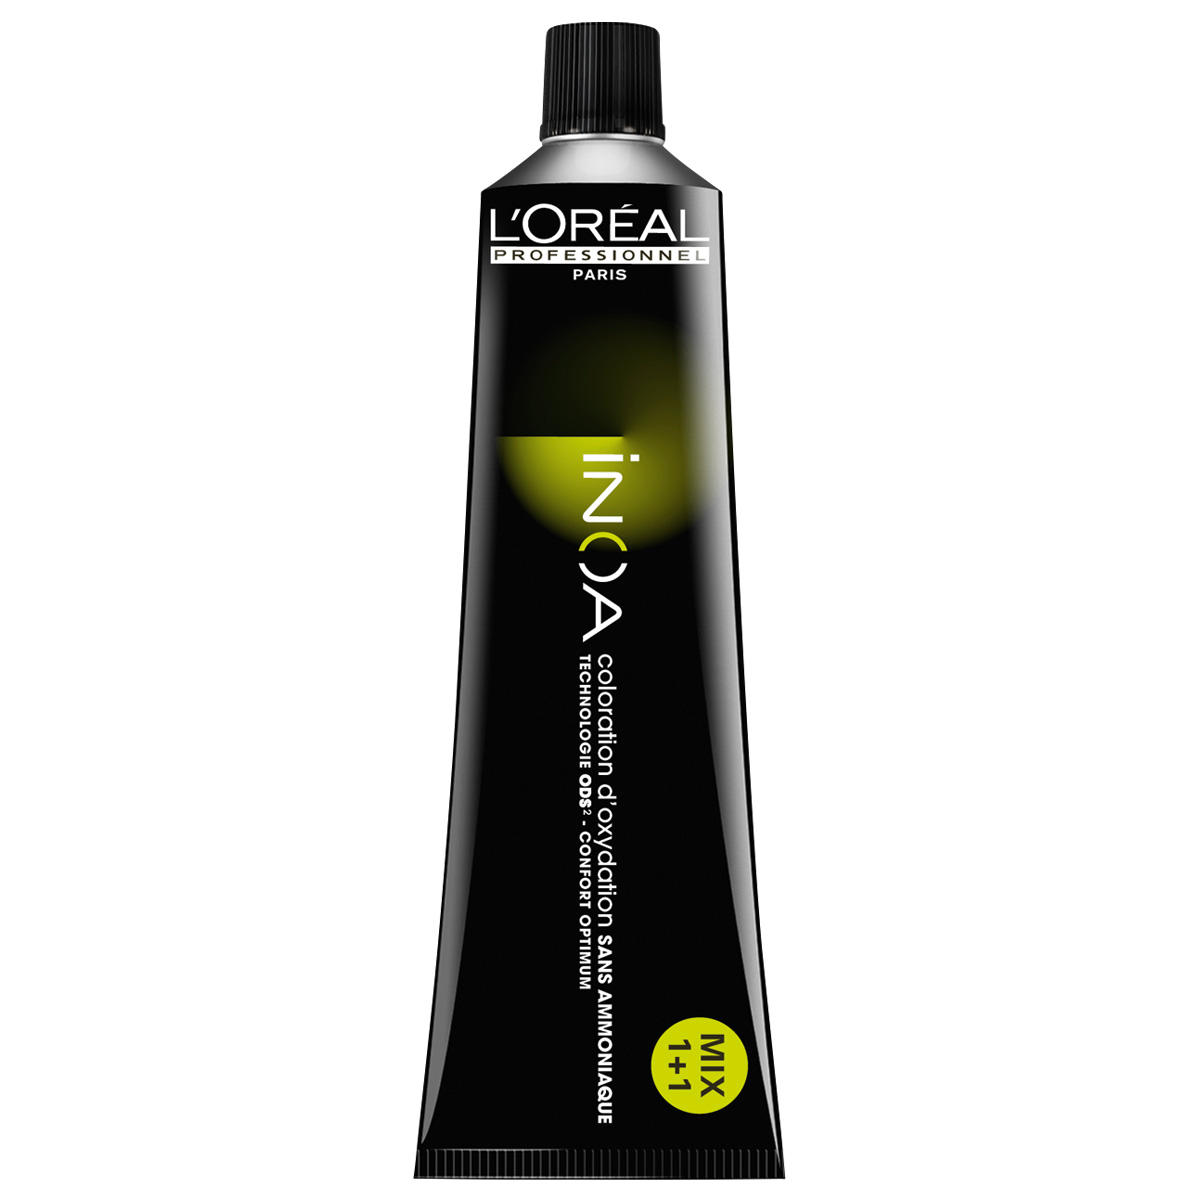 L'Oréal Professionnel Paris Coloration 7.0 Medium Blond Intensive, Tube 60 ml - 1